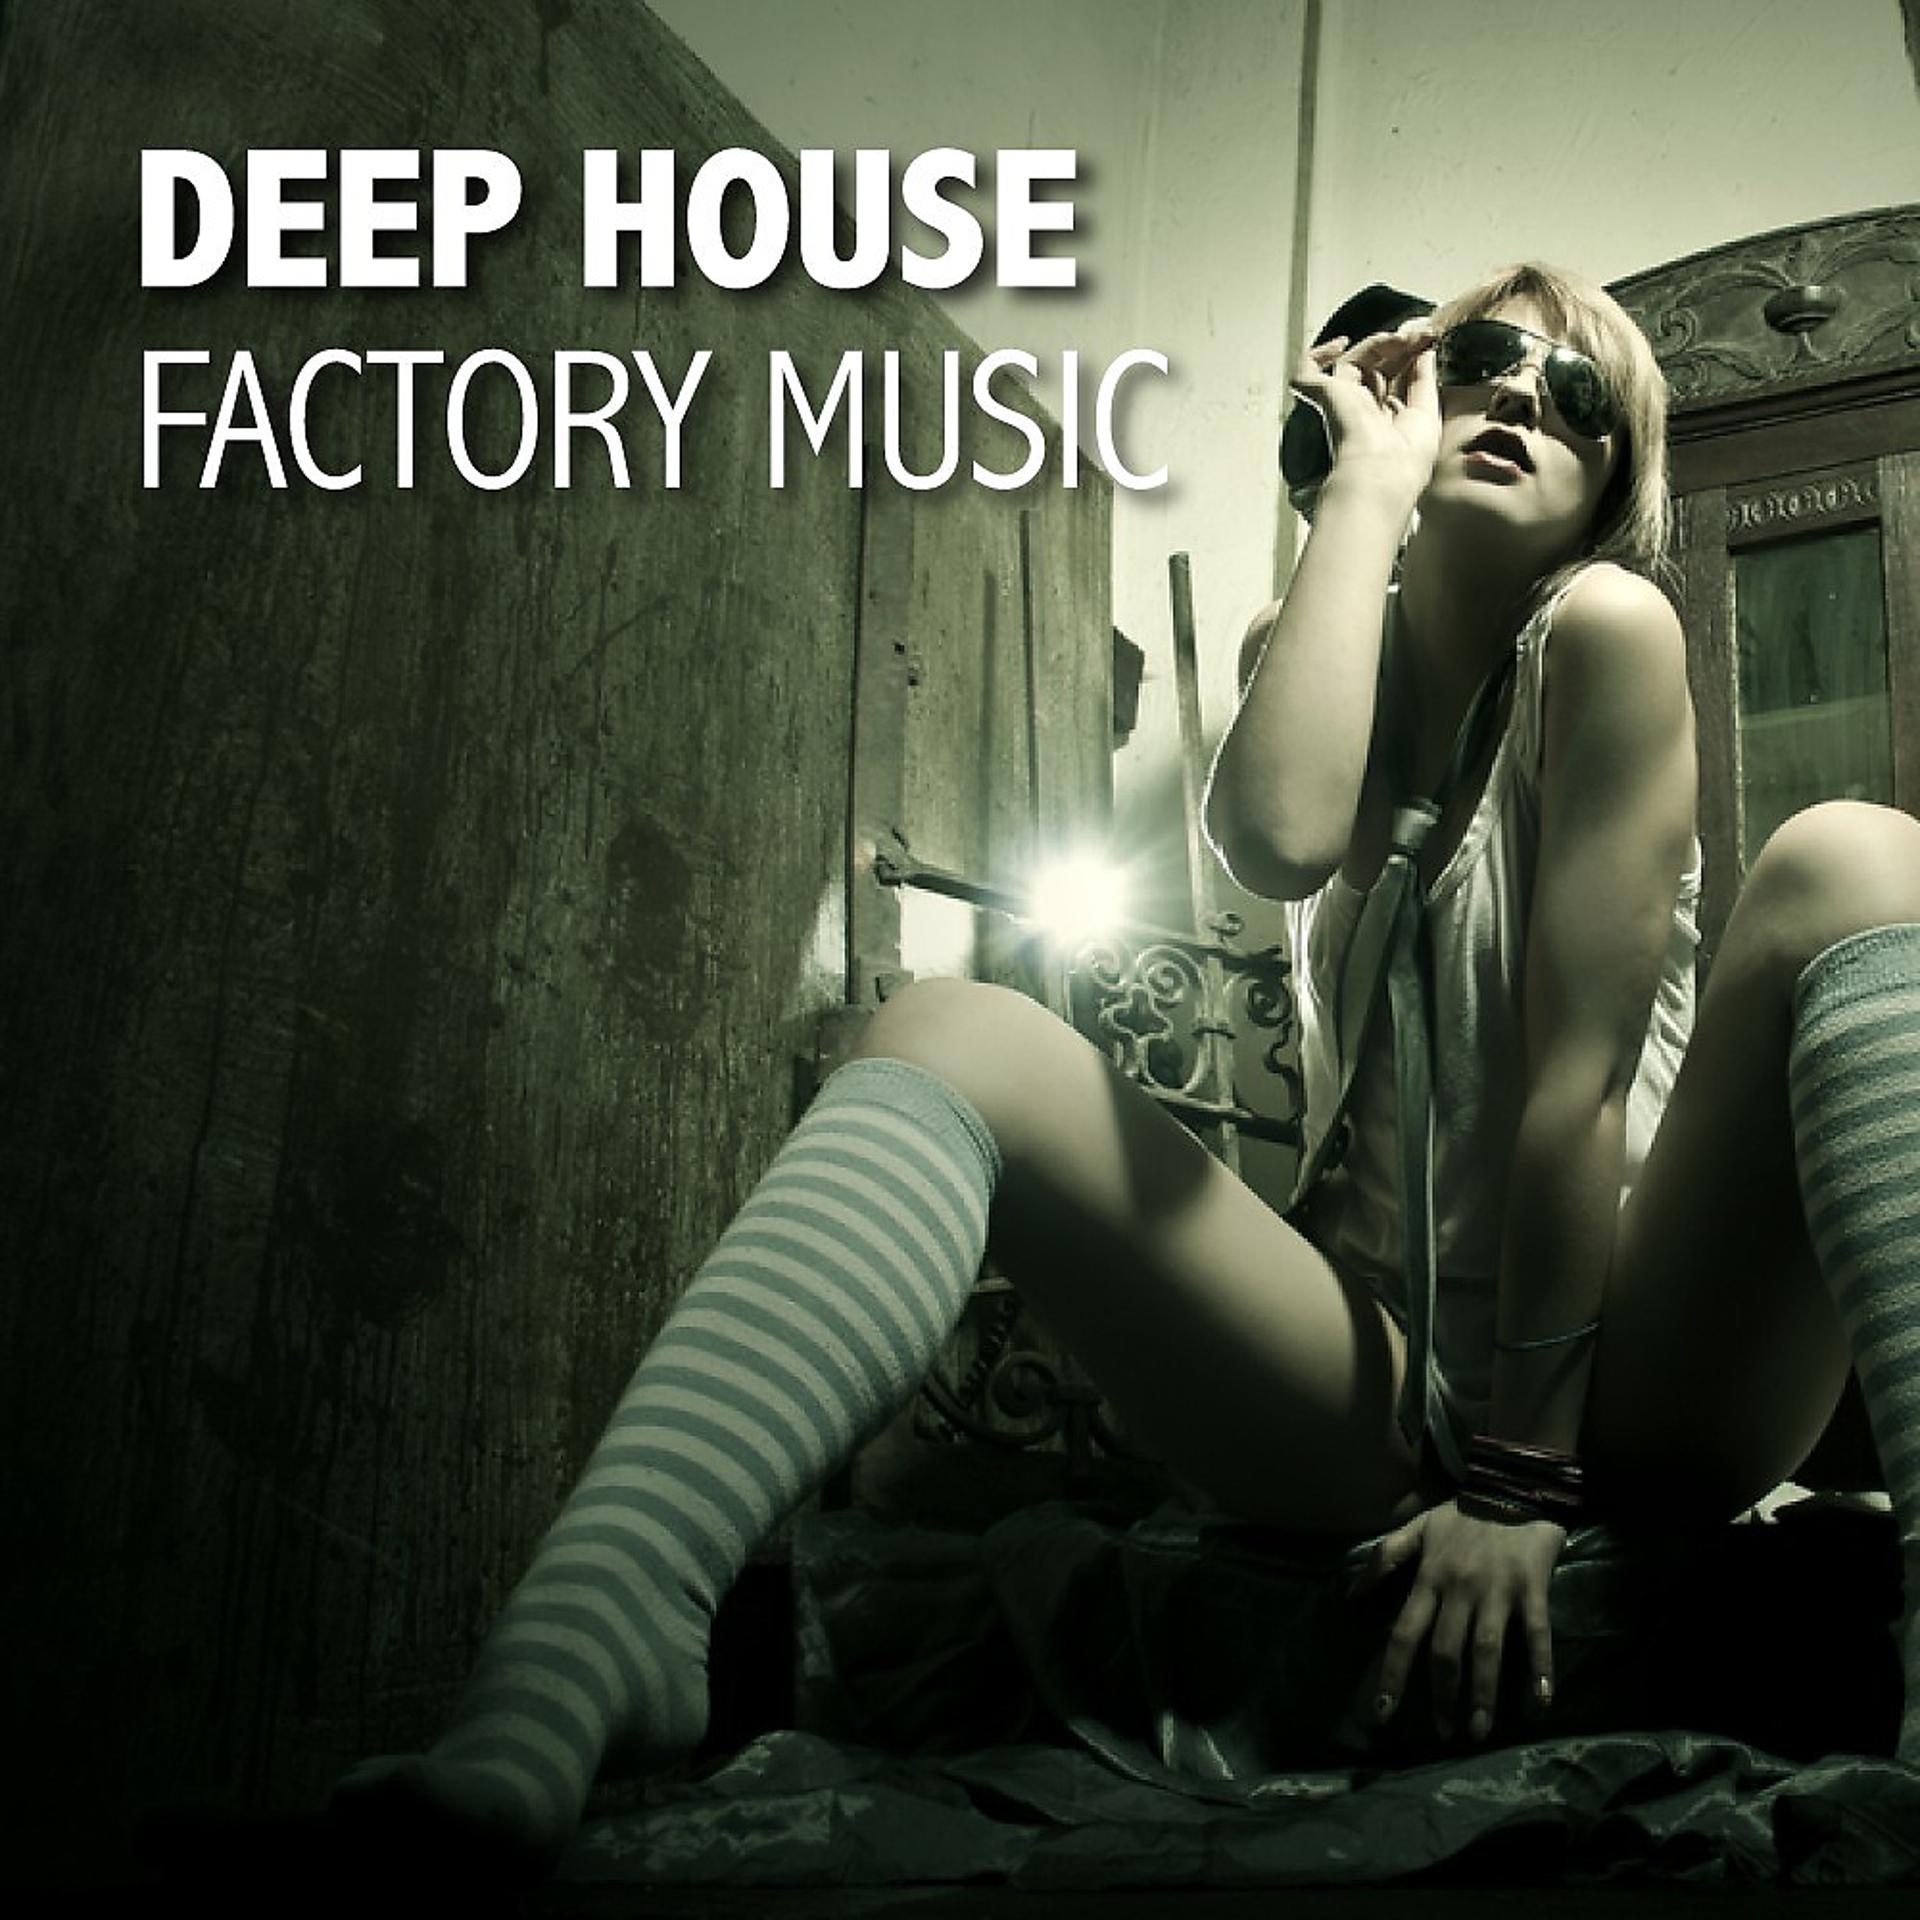 Deep house music музыка. Deep House. Обложки музыкальных альбомов дип Хаус. Картинки в стиле Deep House. Обложка для альбома дип Хаус.